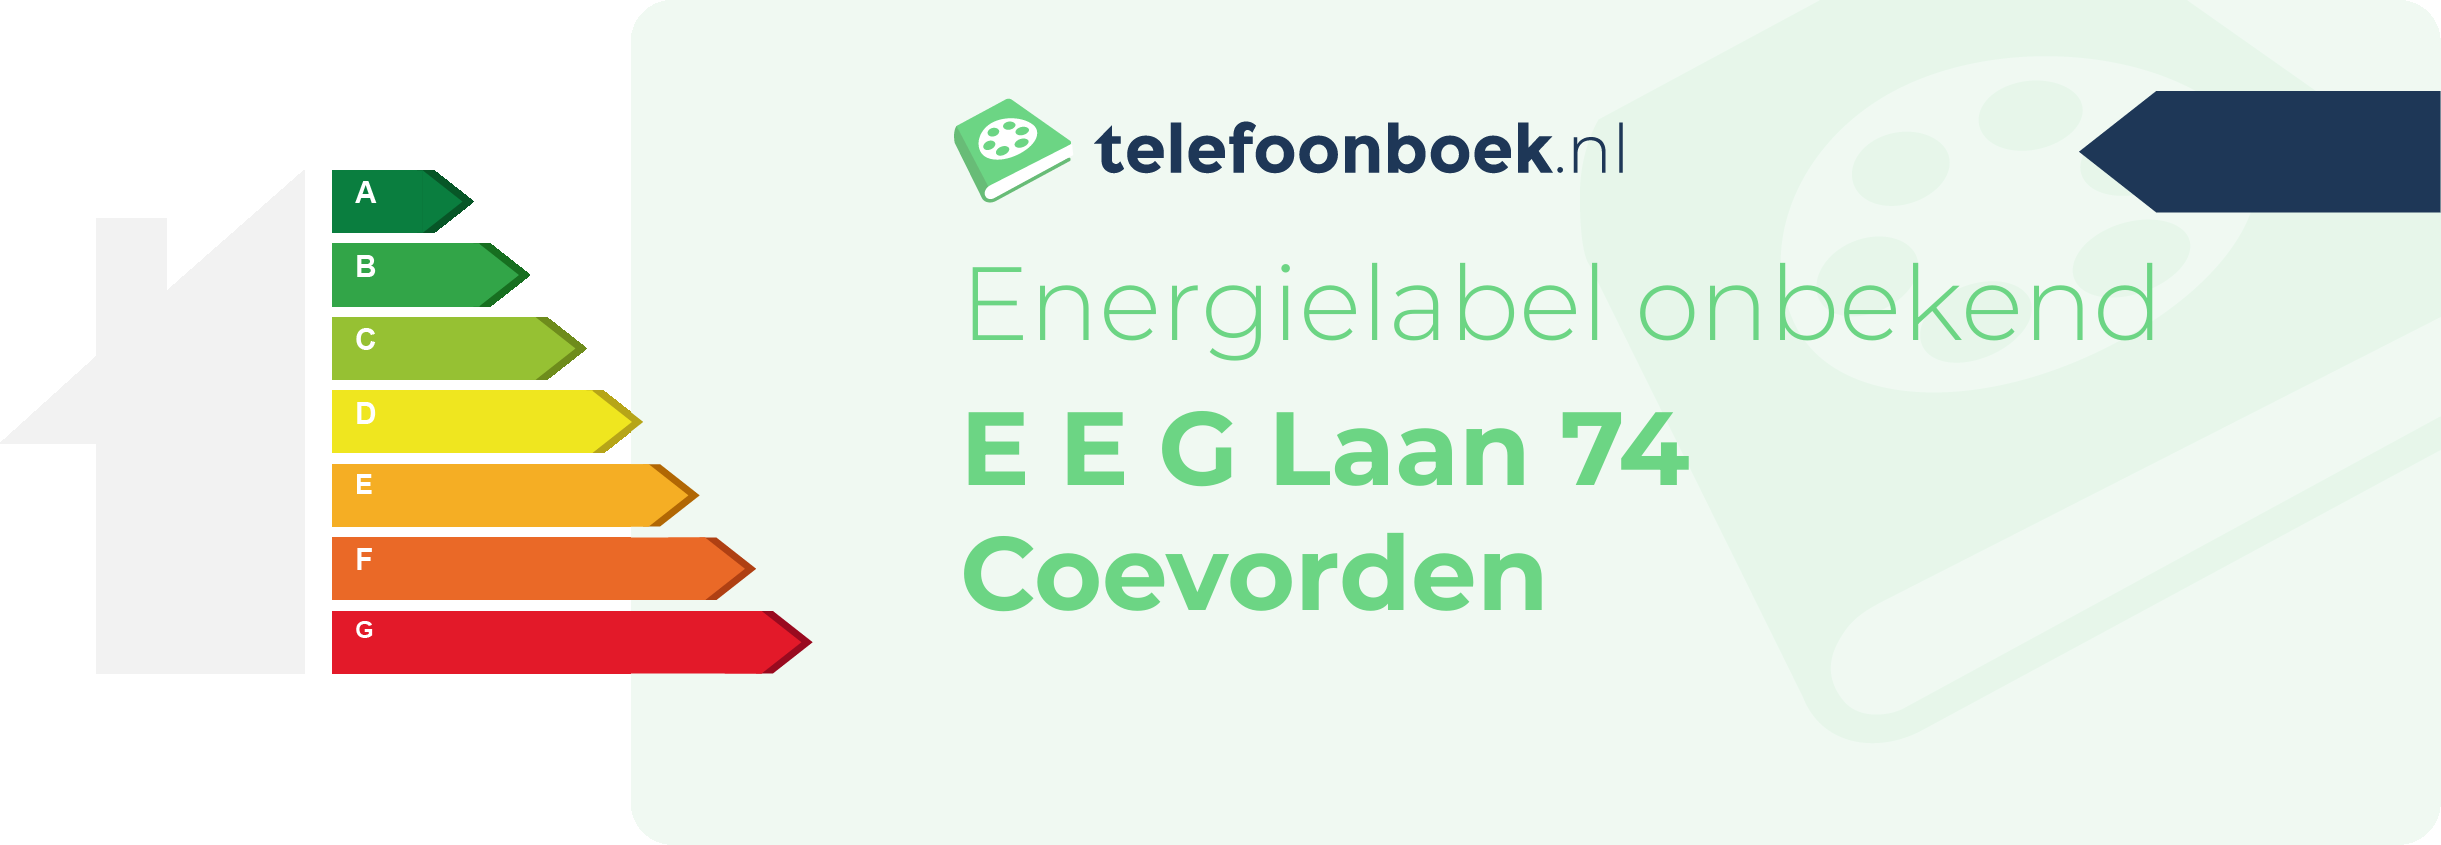 Energielabel E E G Laan 74 Coevorden